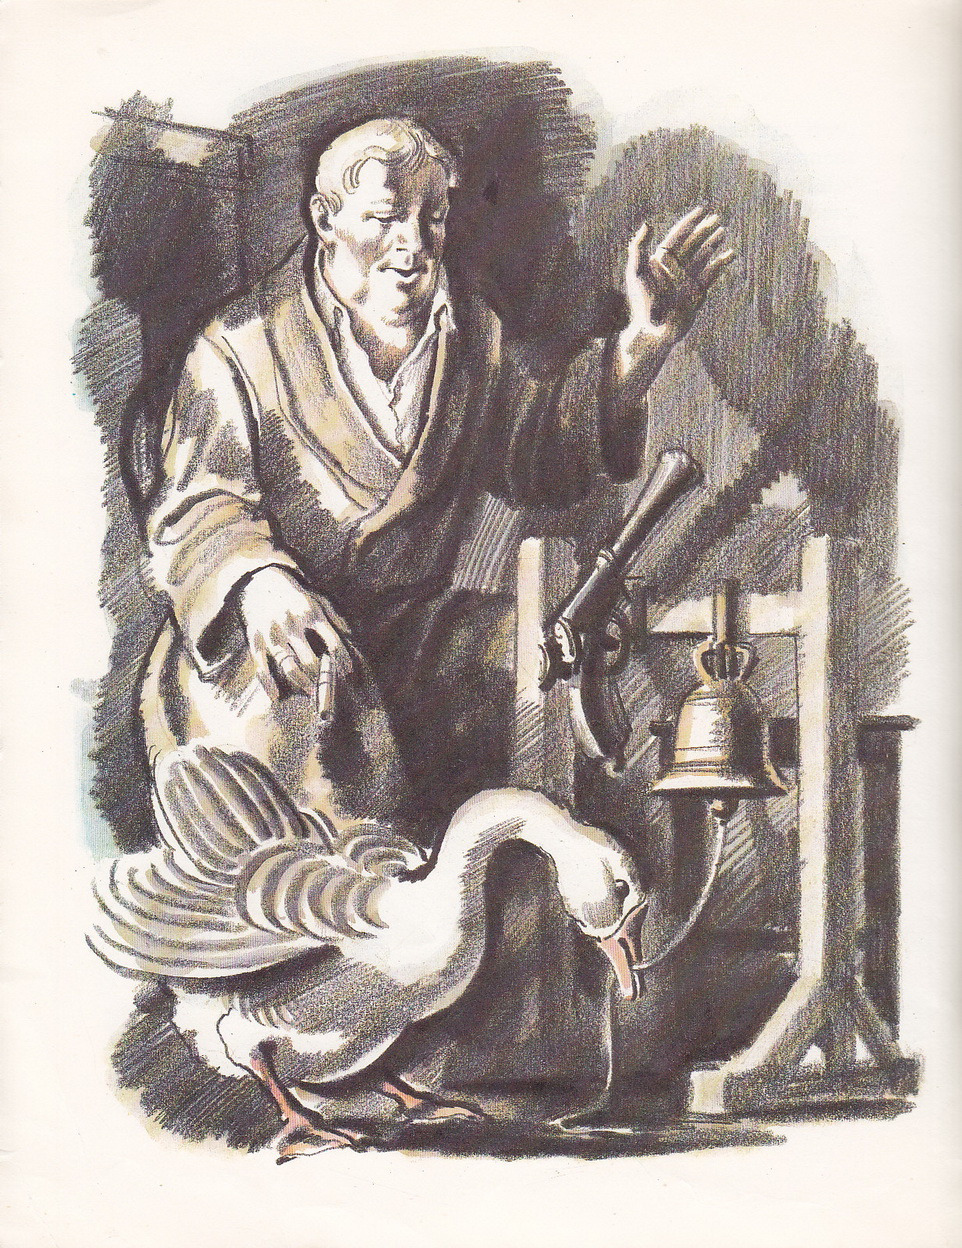 Нажмите для увеличения. Чехов, А.П. Каштанка. Иллюстрации Б. Алимова (фото книги из фонда библиотеки)